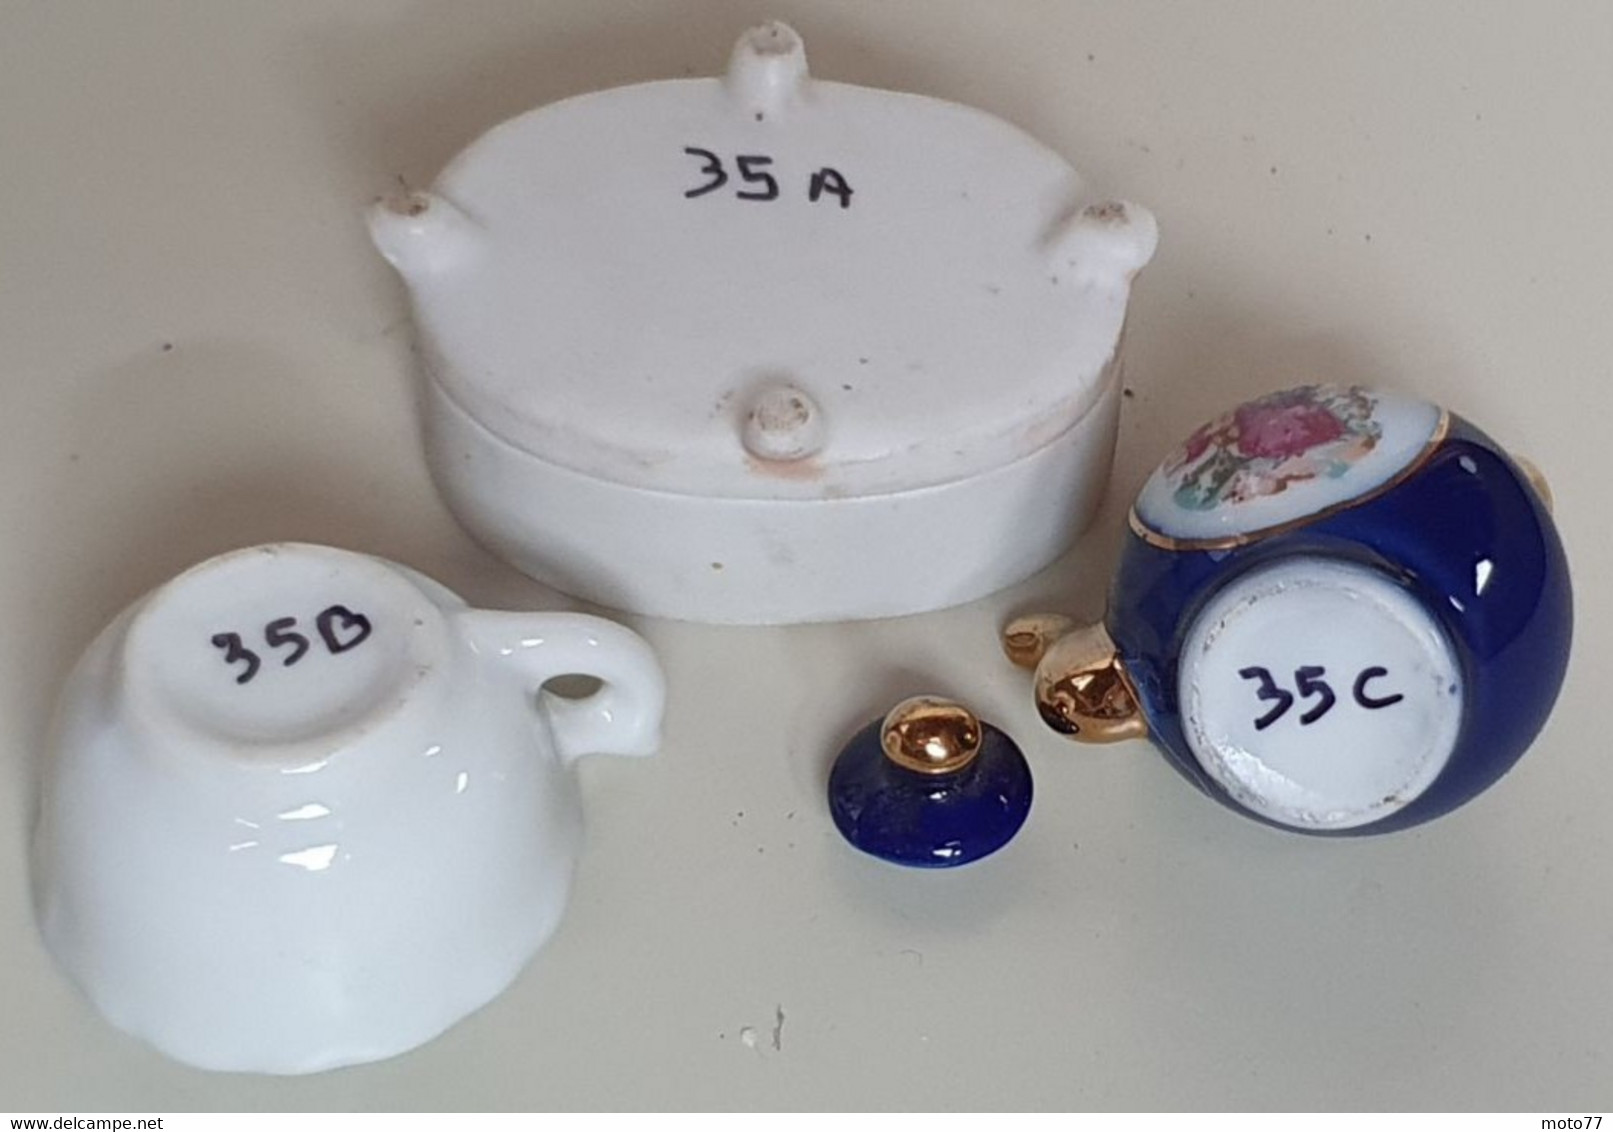 Lot de 3 petites vaisselle - Tasse Coupelle fleurie Théière Cafetière - STATUETTE - Bon état - 35 / vers 1990